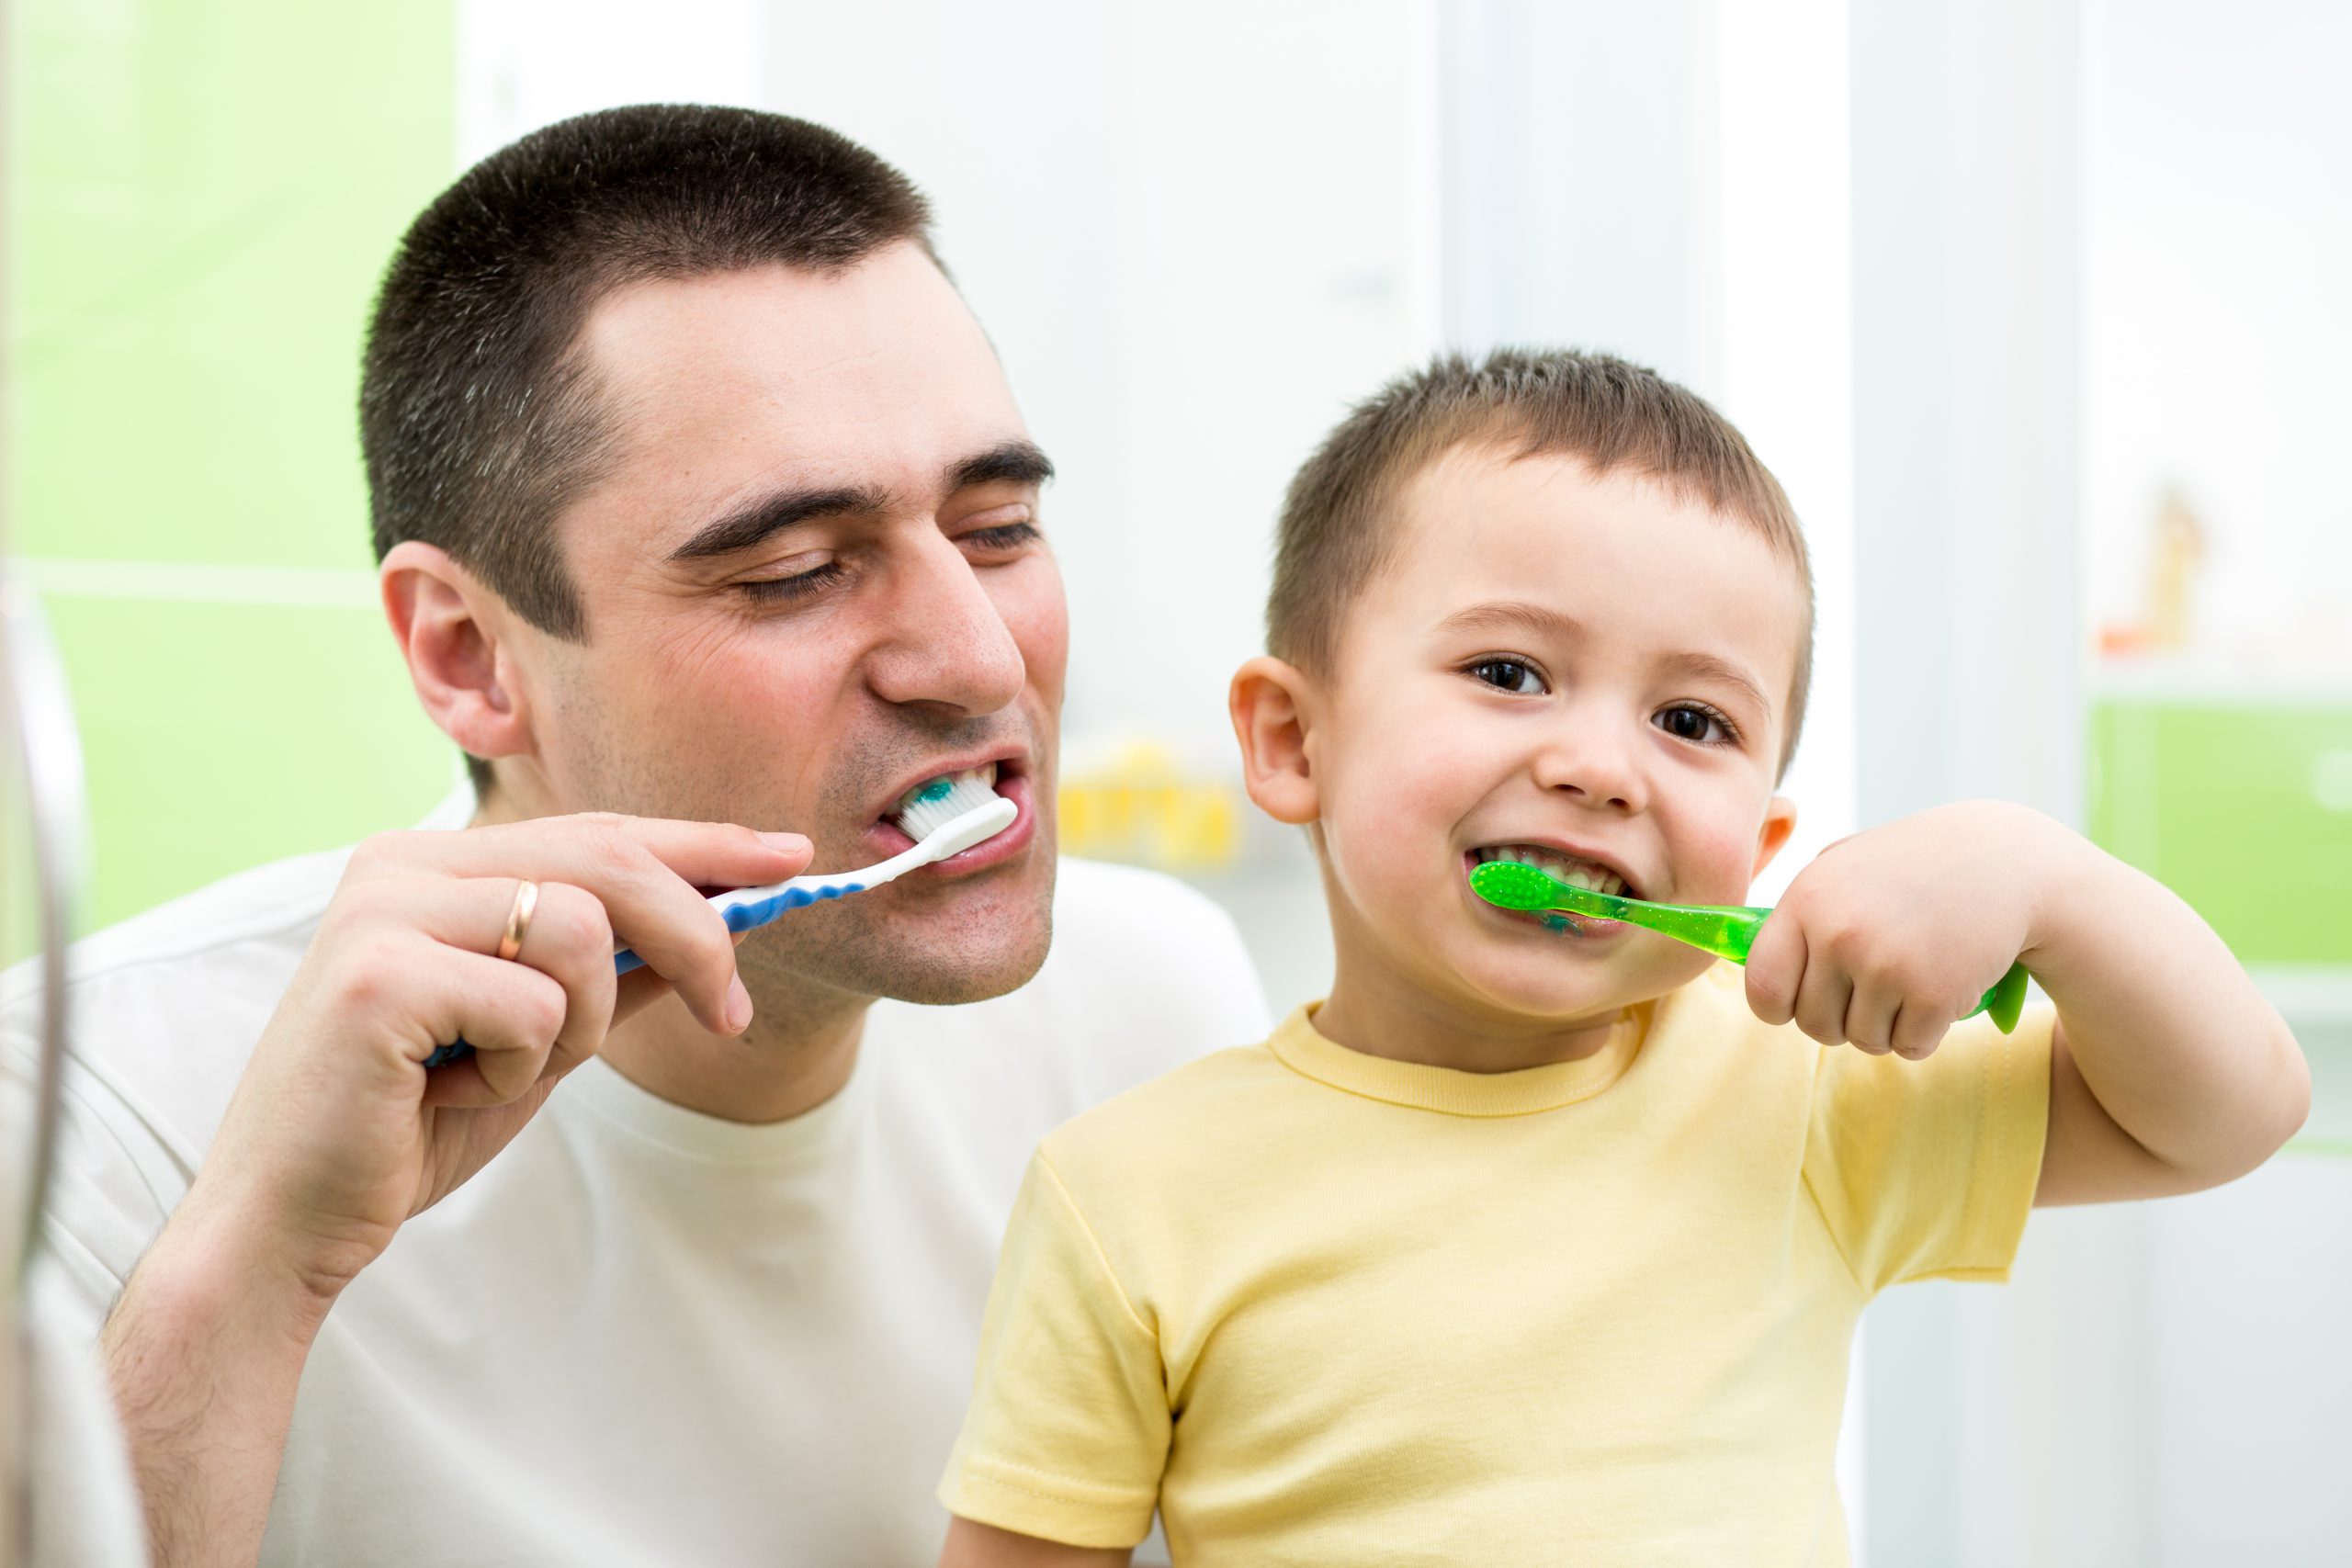 Do your teeth. Чистим зубы!. Гигиена полости рта для детей. Гигиена зубов и полости рта для детей. Мальчик чистит зубы.